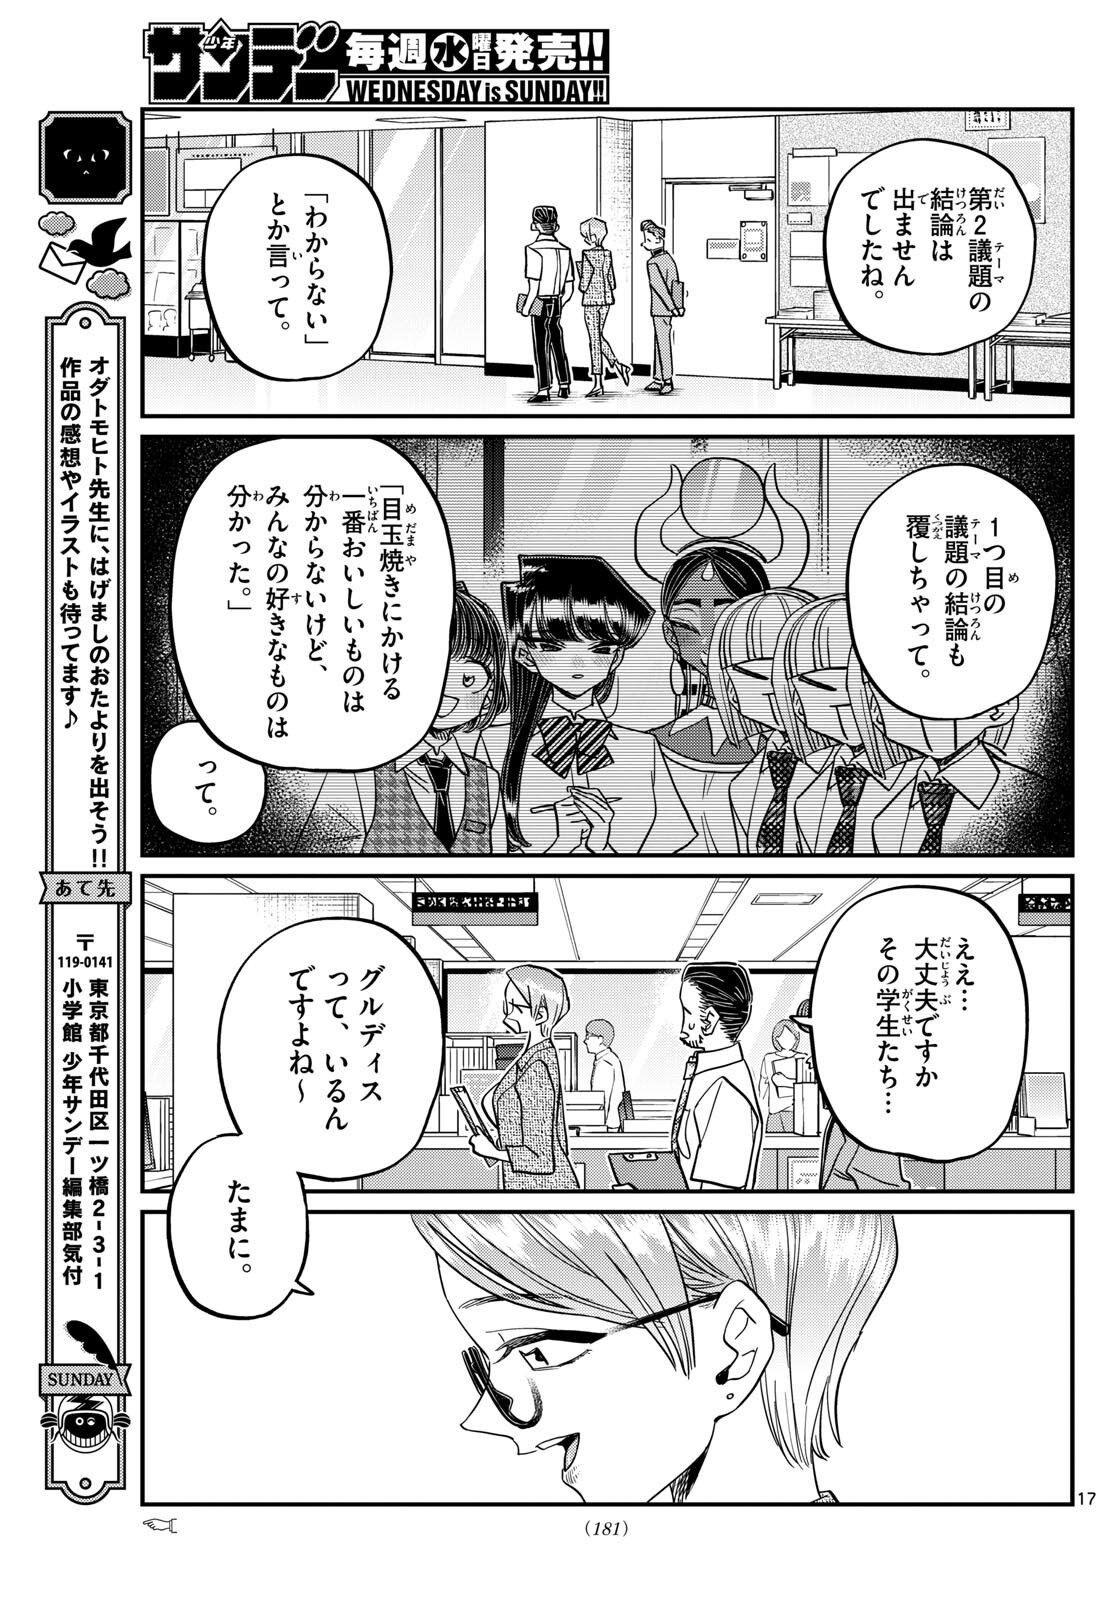 Komi-san wa Komyushou Desu - Chapter 441 - Page 17